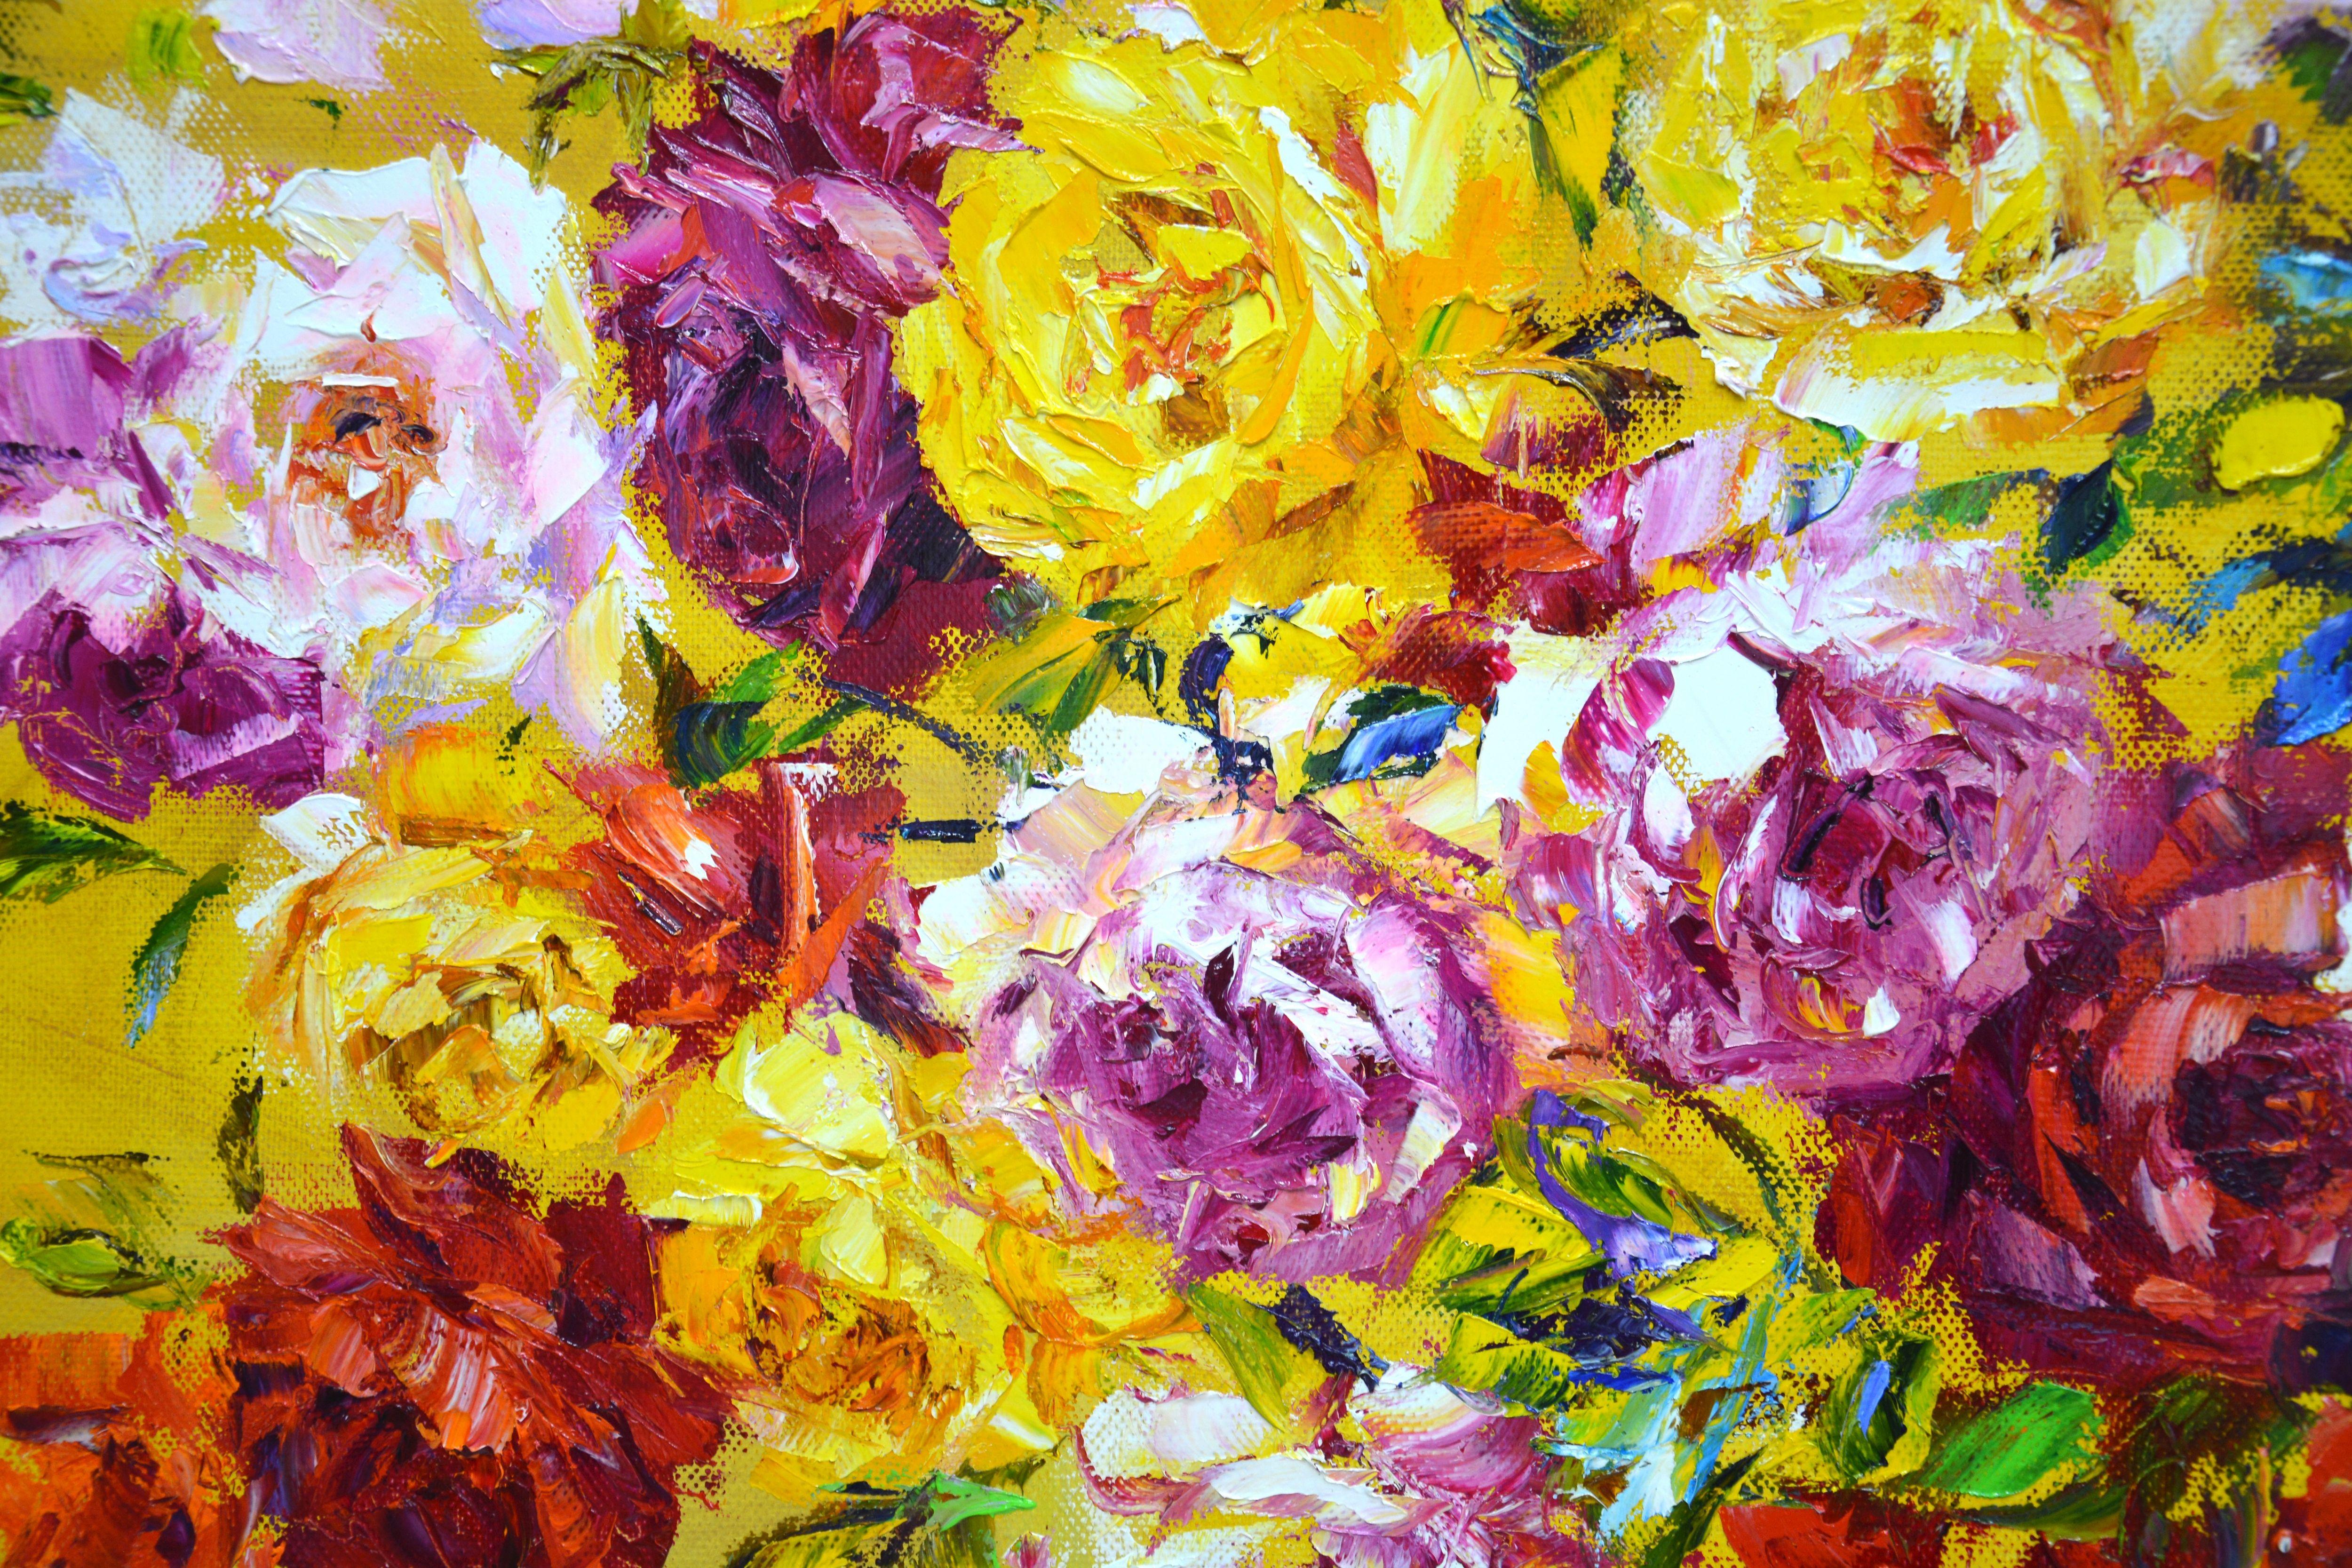 Grand bouquet de roses 3. Roses : blanches, roses, jaunes, rouges sur un fond abstrait jaune. L'impressionnisme. Texturé au pinceau et au couteau à palette pour transmettre rapidement une humeur, une impression vive. Fait partie d'une série en cours